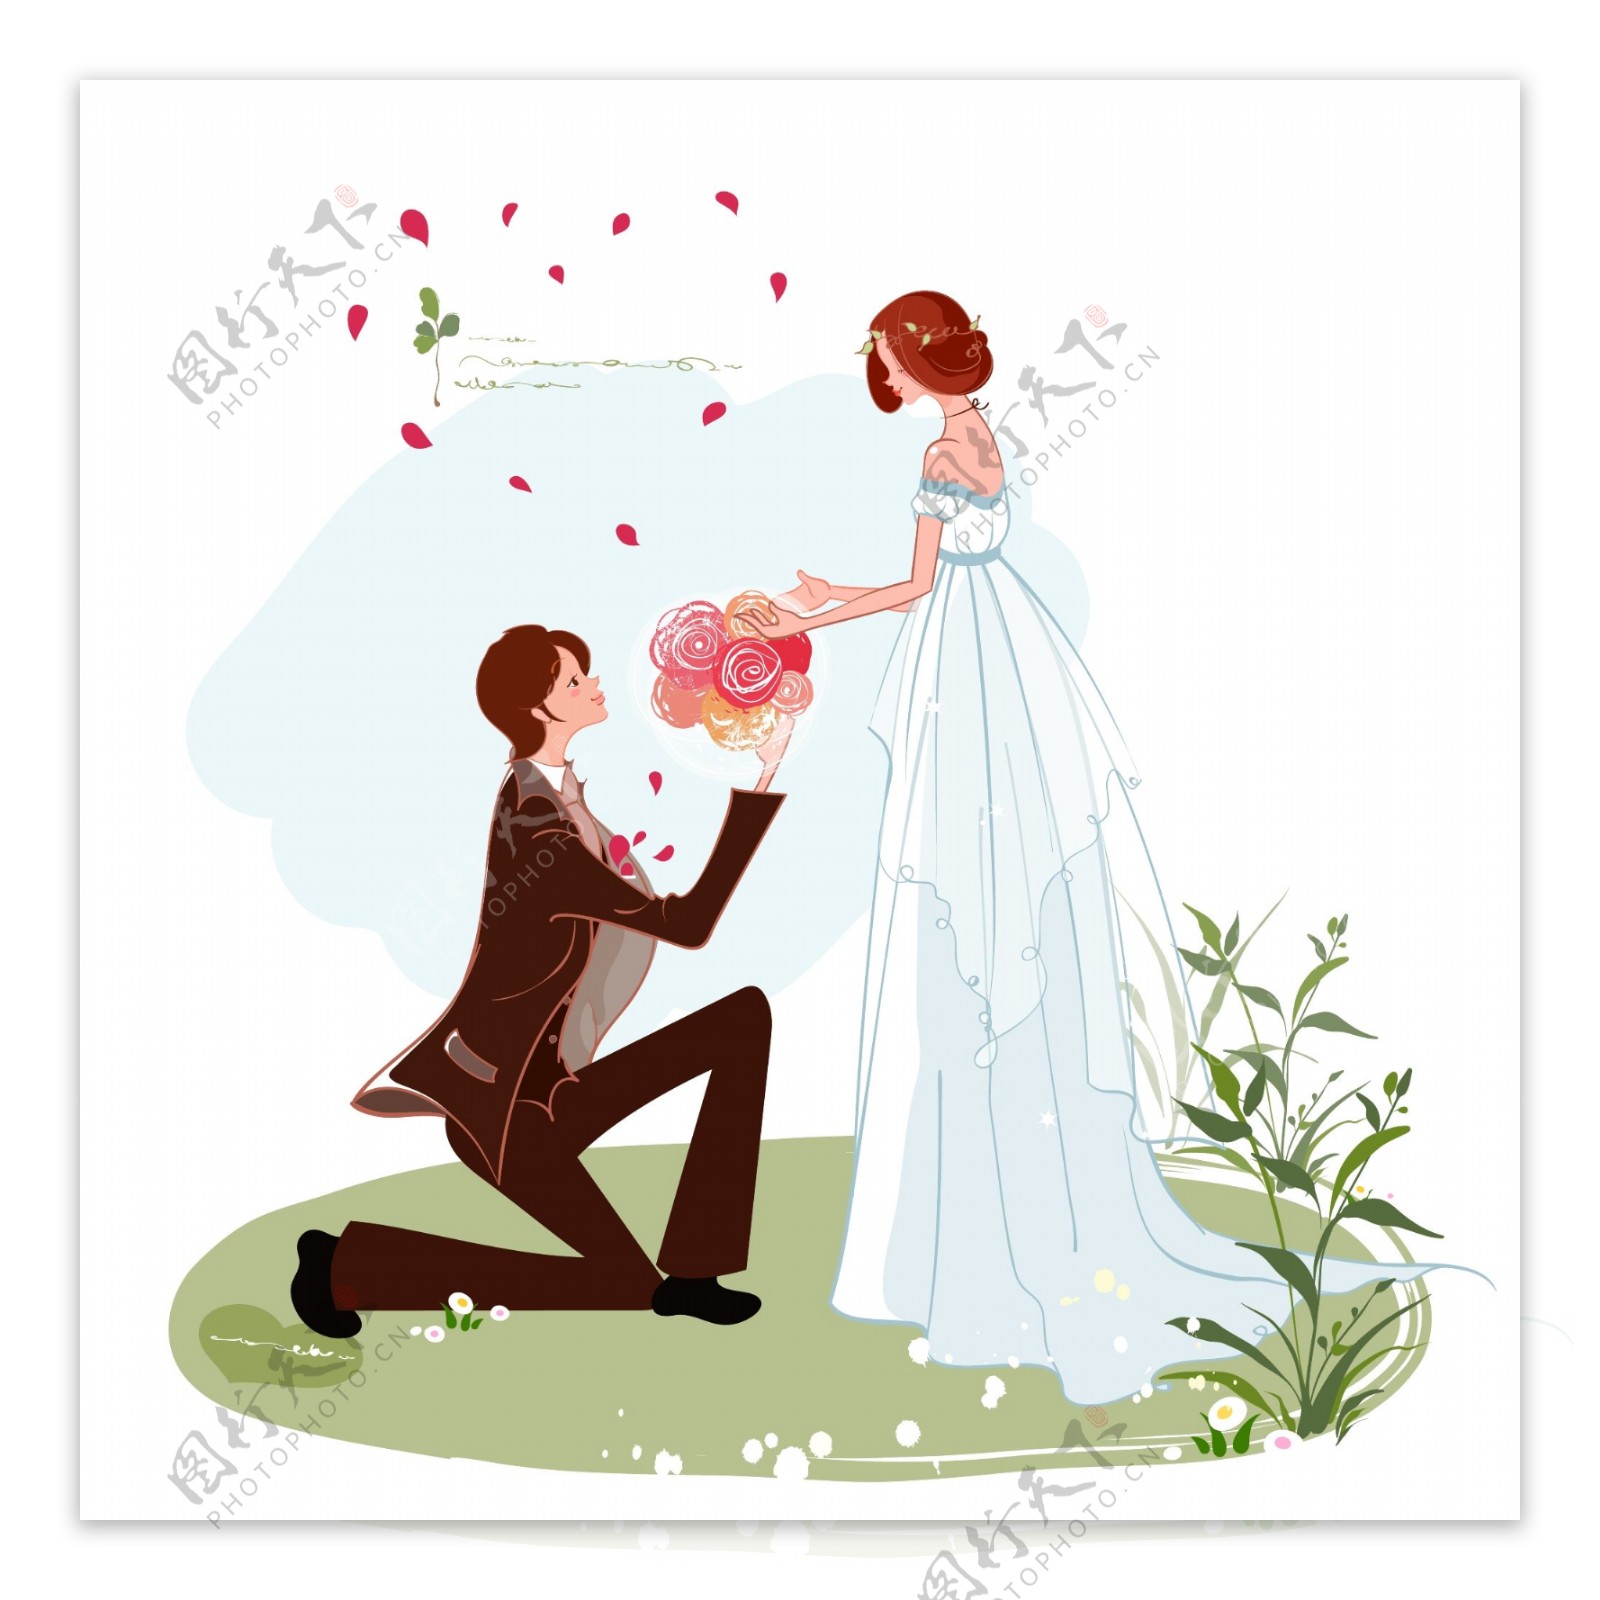 跪地向新娘献花的新郎图片